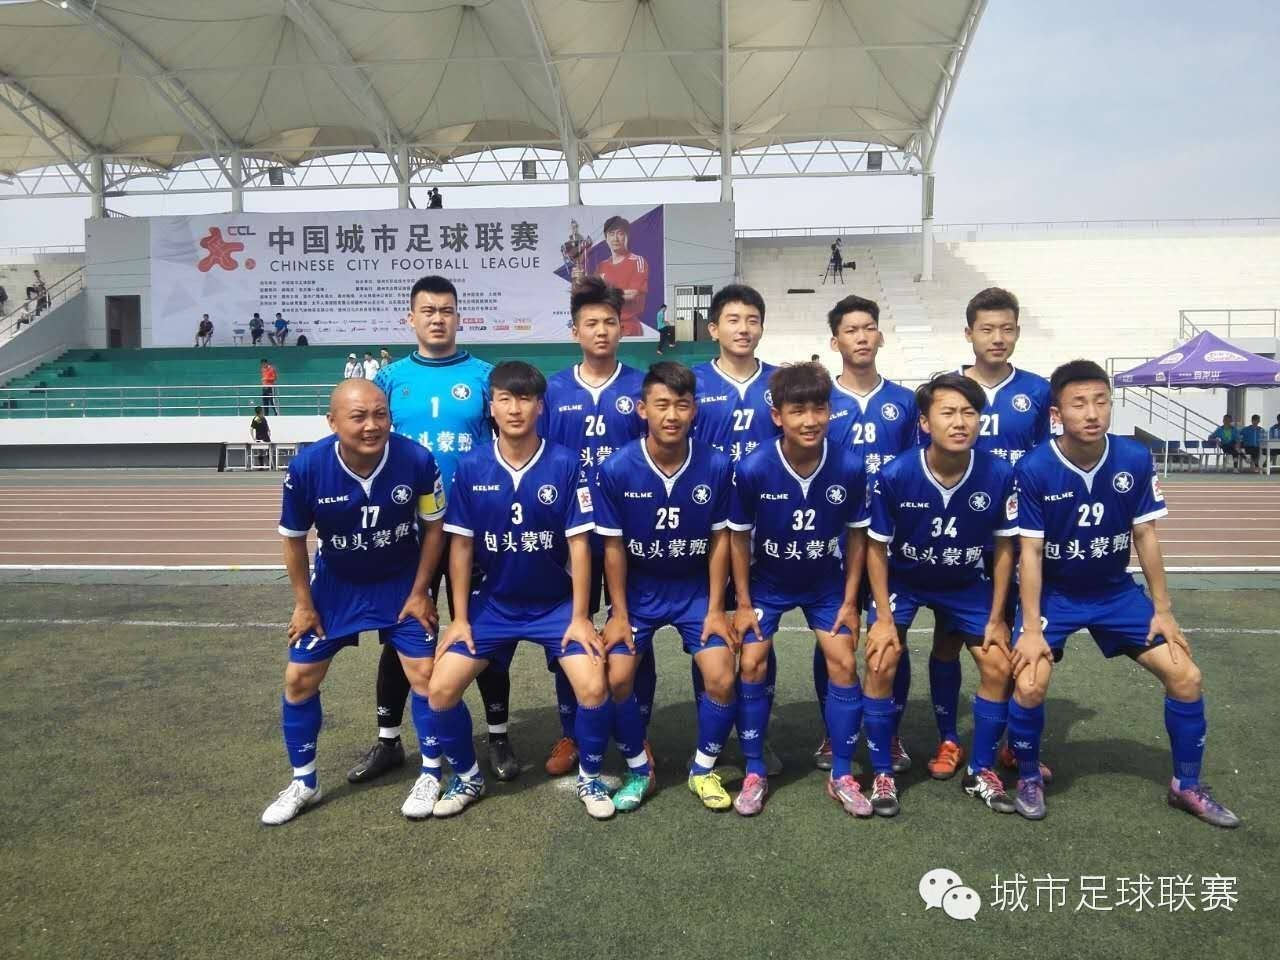 [战报速递]2016中国城市足球联赛第四周赛况回